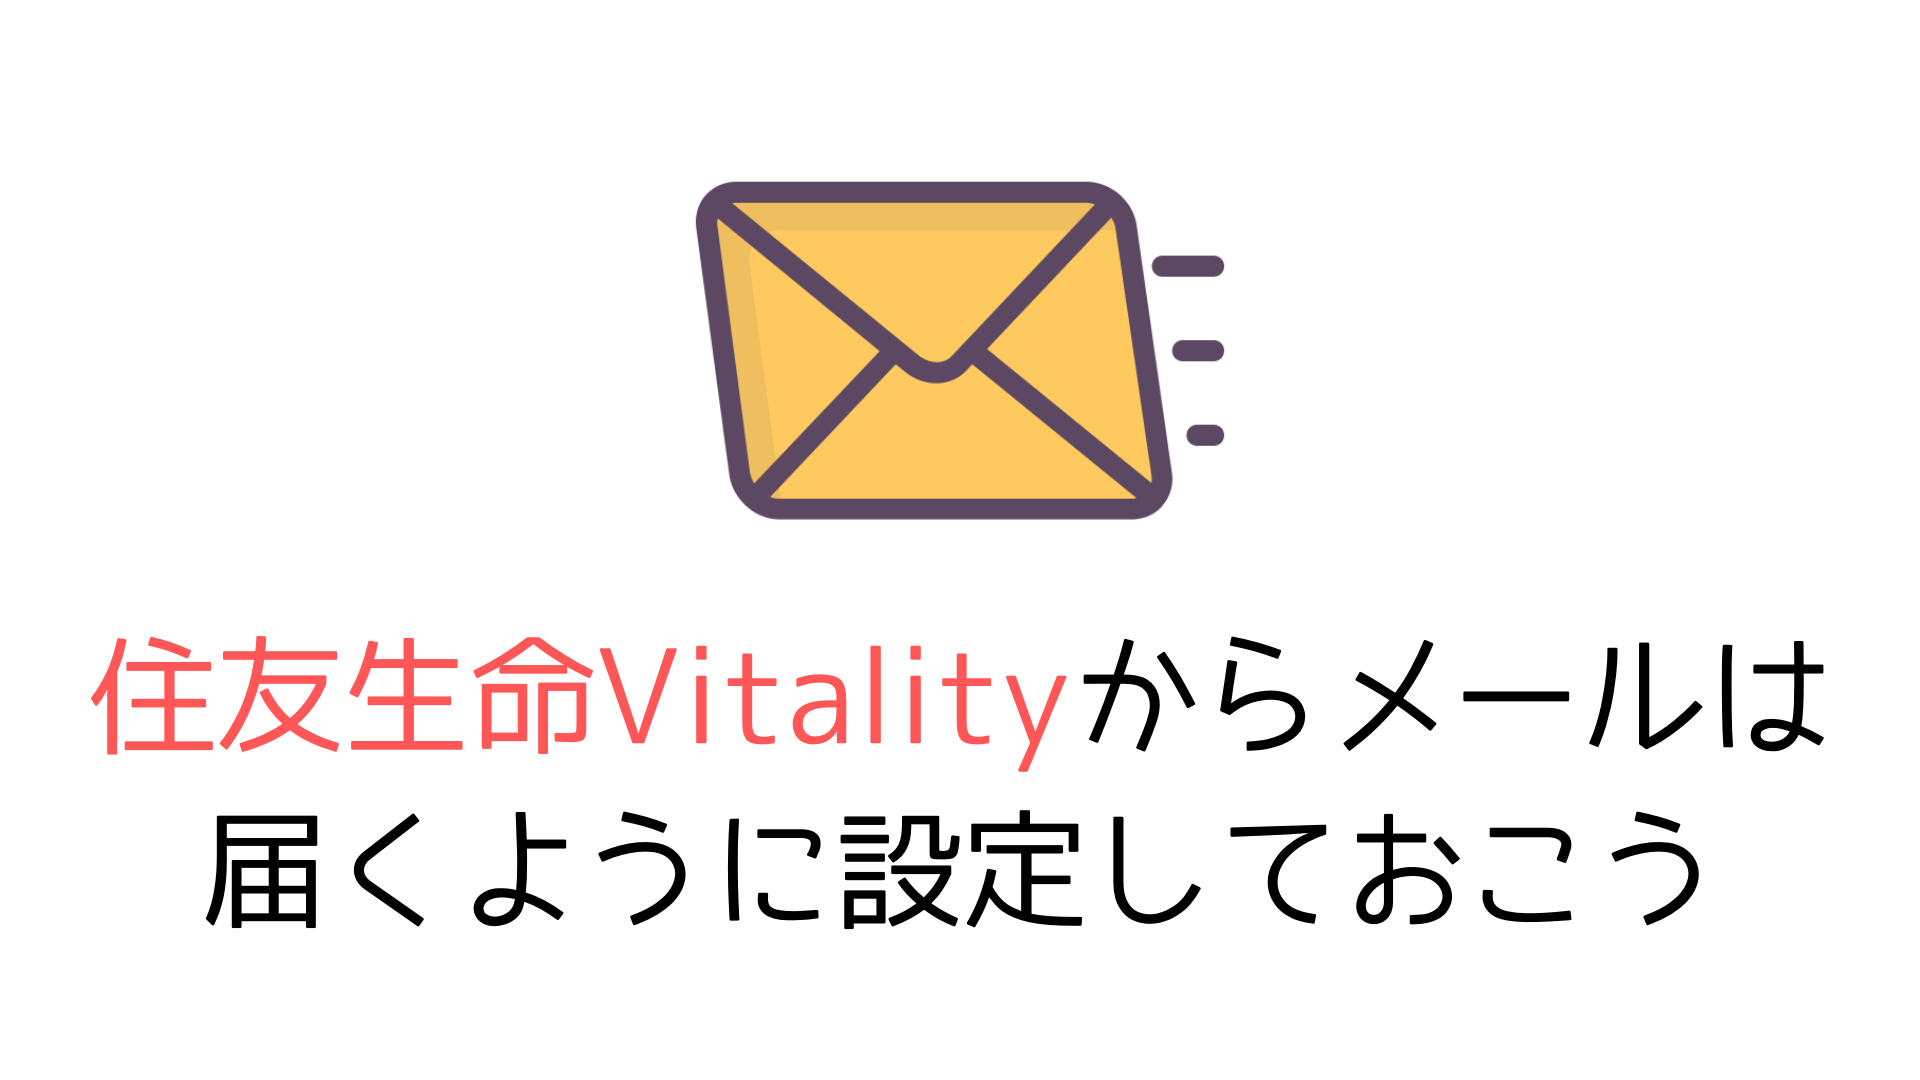 住友生命Vitalityからメールは 届くように設定しておこう